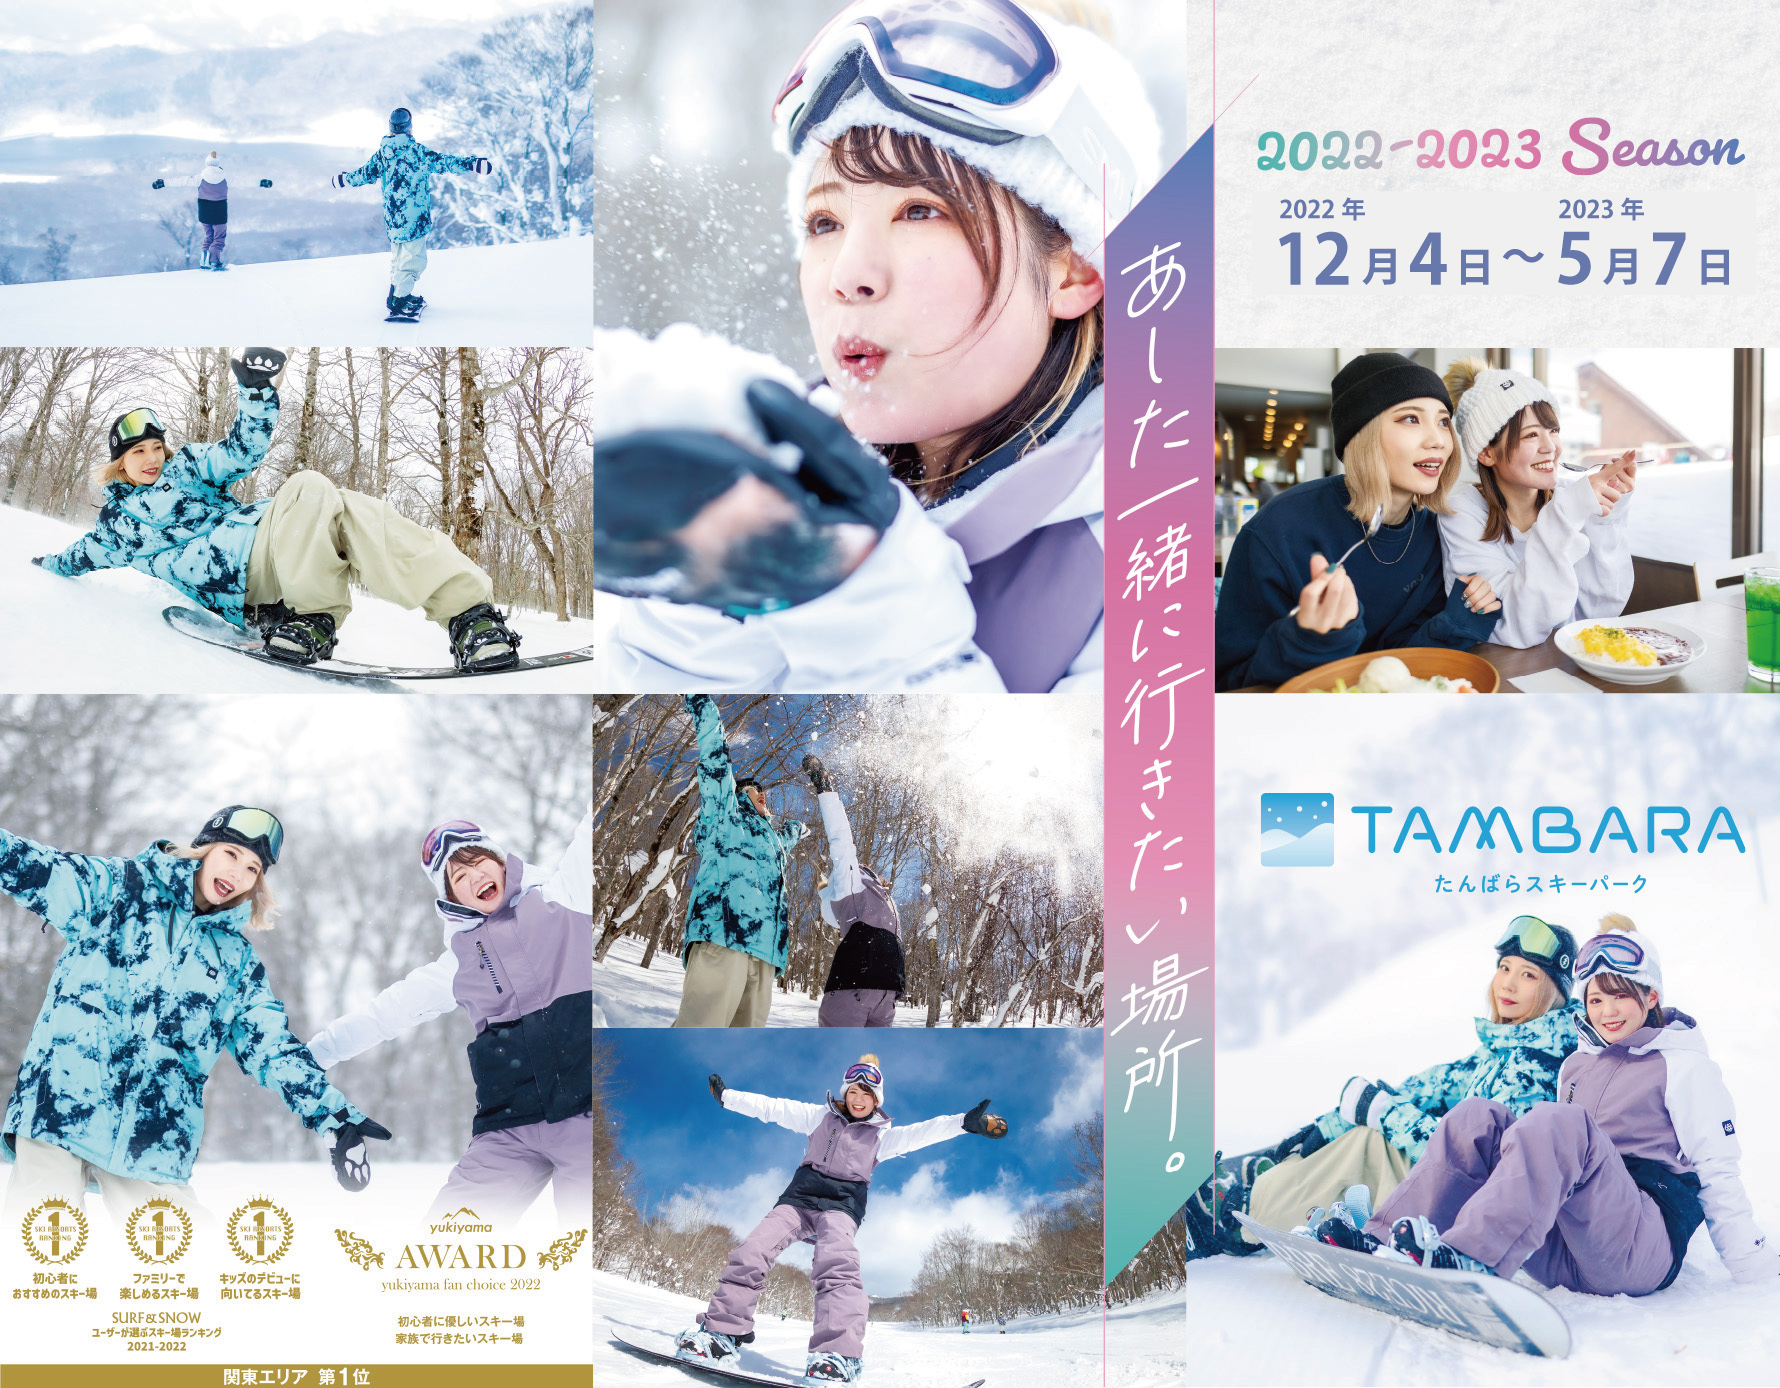 たんばらスキーパーク 12月4日 日 よりスキー場営業開始 東急リゾーツ ステイ株式会社のプレスリリース